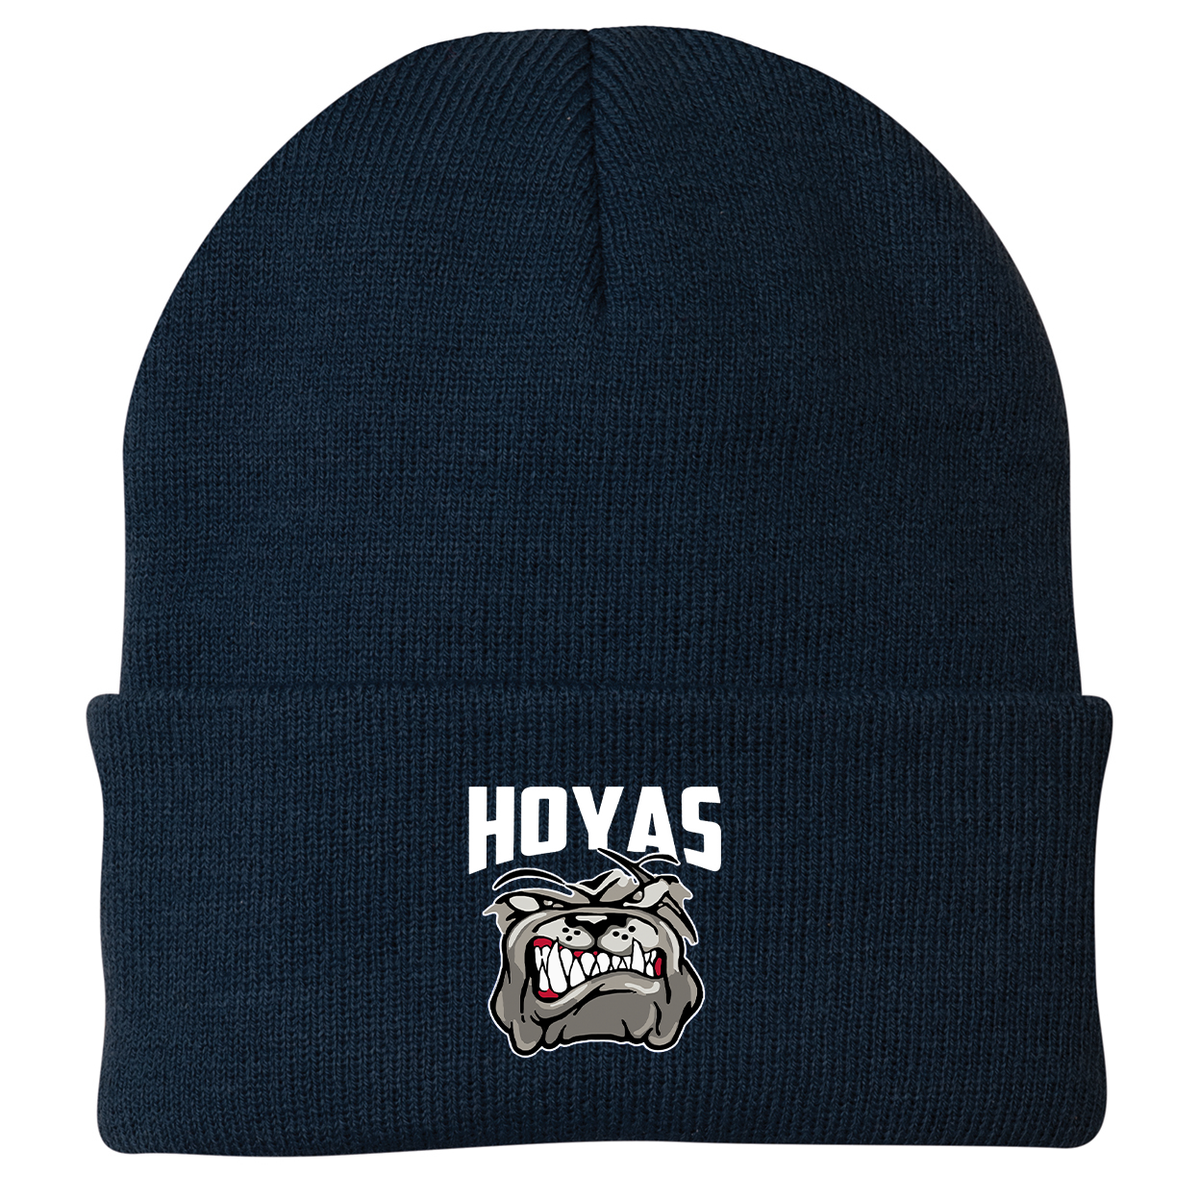 Hoya Lacrosse Knit Beanie